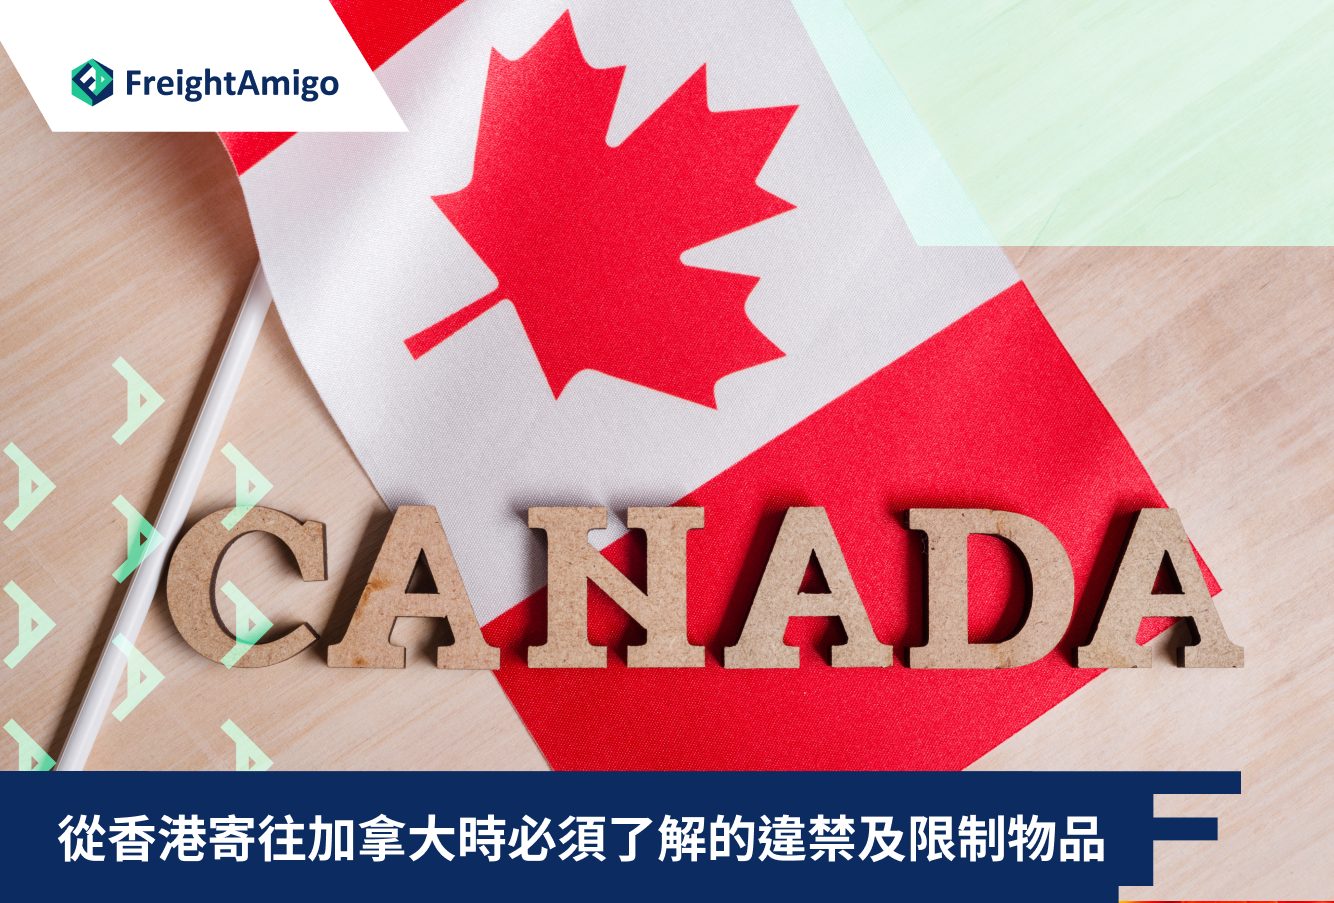 從香港寄往加拿大時必須了解的違禁及限制物品